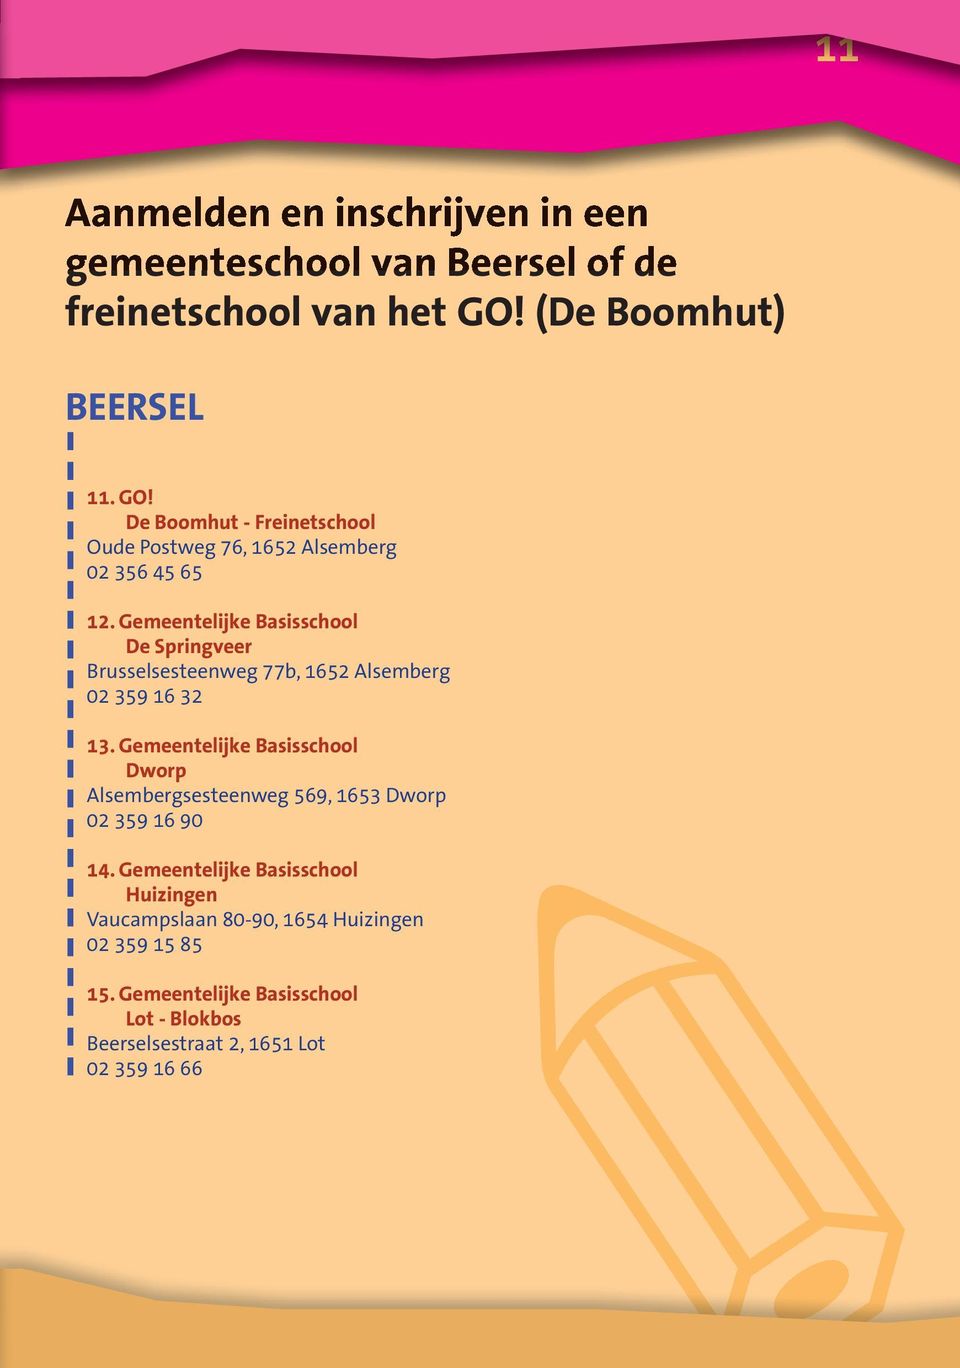 Gemeentelijke Basisschool De Springveer Brusselsesteenweg 77b, 1652 Alsemberg 02 359 16 32 13.